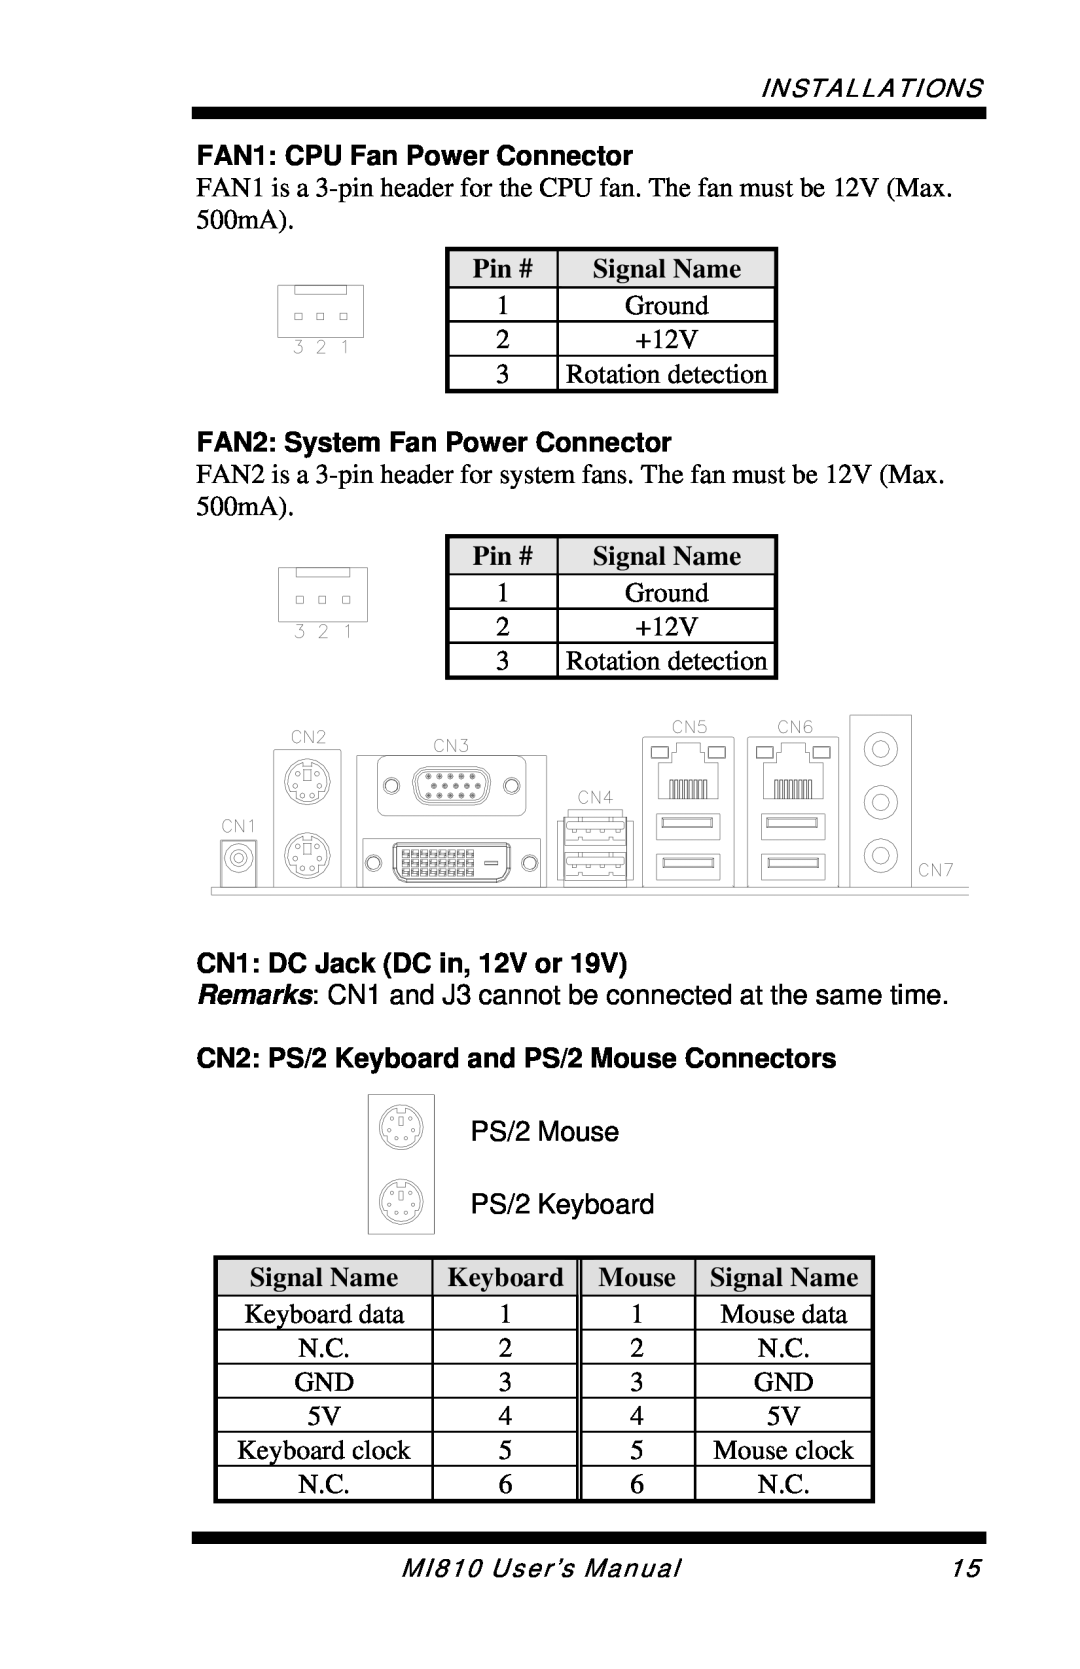 Intel MI810 FAN1 CPU Fan Power Connector, FAN2 System Fan Power Connector, CN1 DC Jack DC in, 12V or, Keyboard, Mouse 